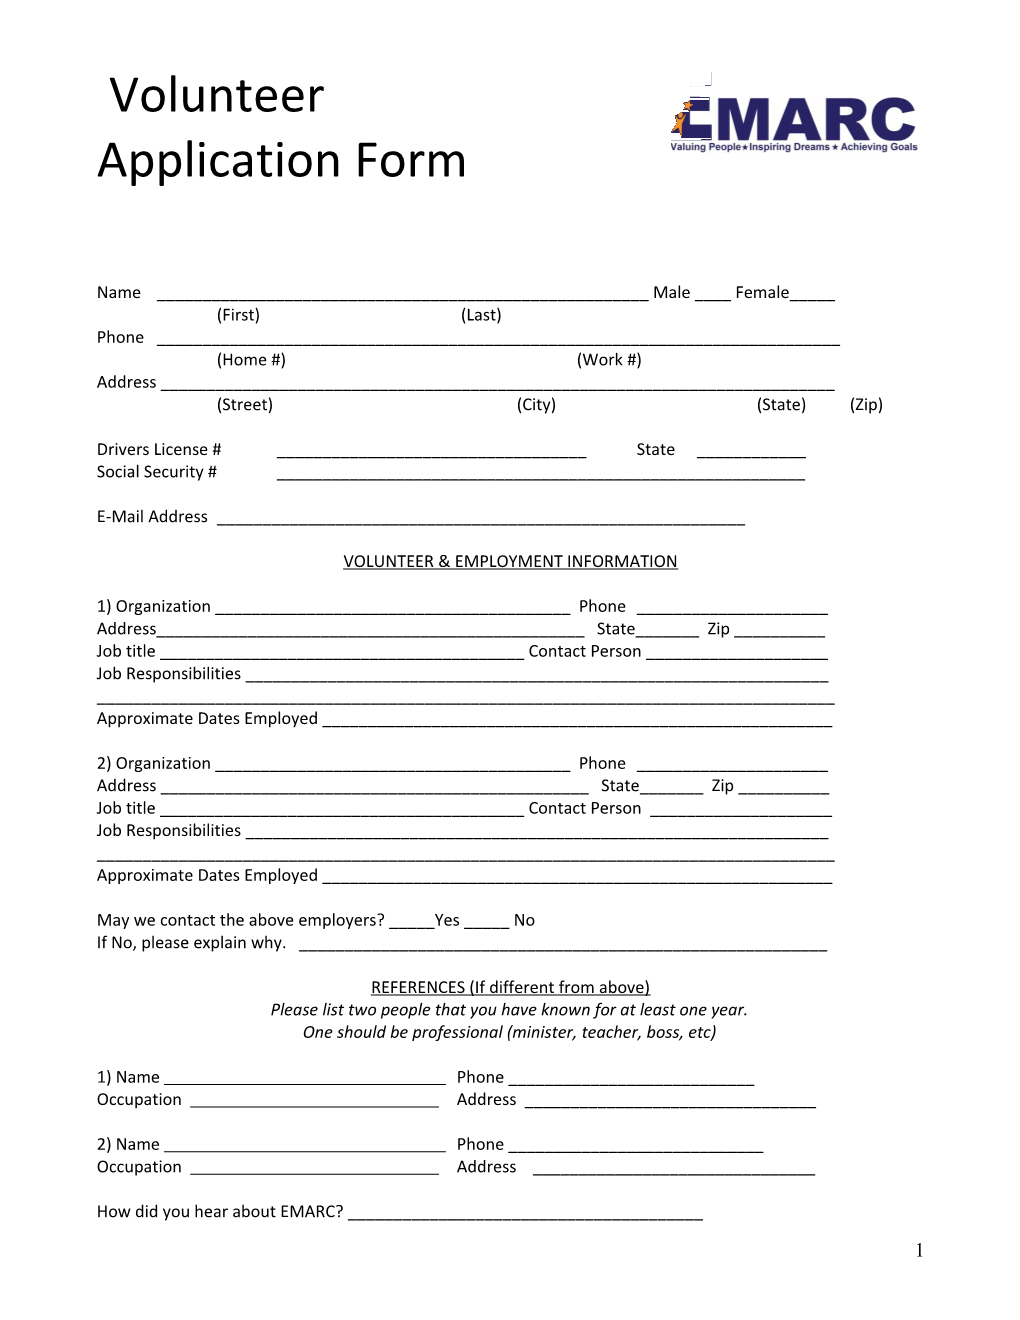 Camp Sunshine Volunteer Application Form